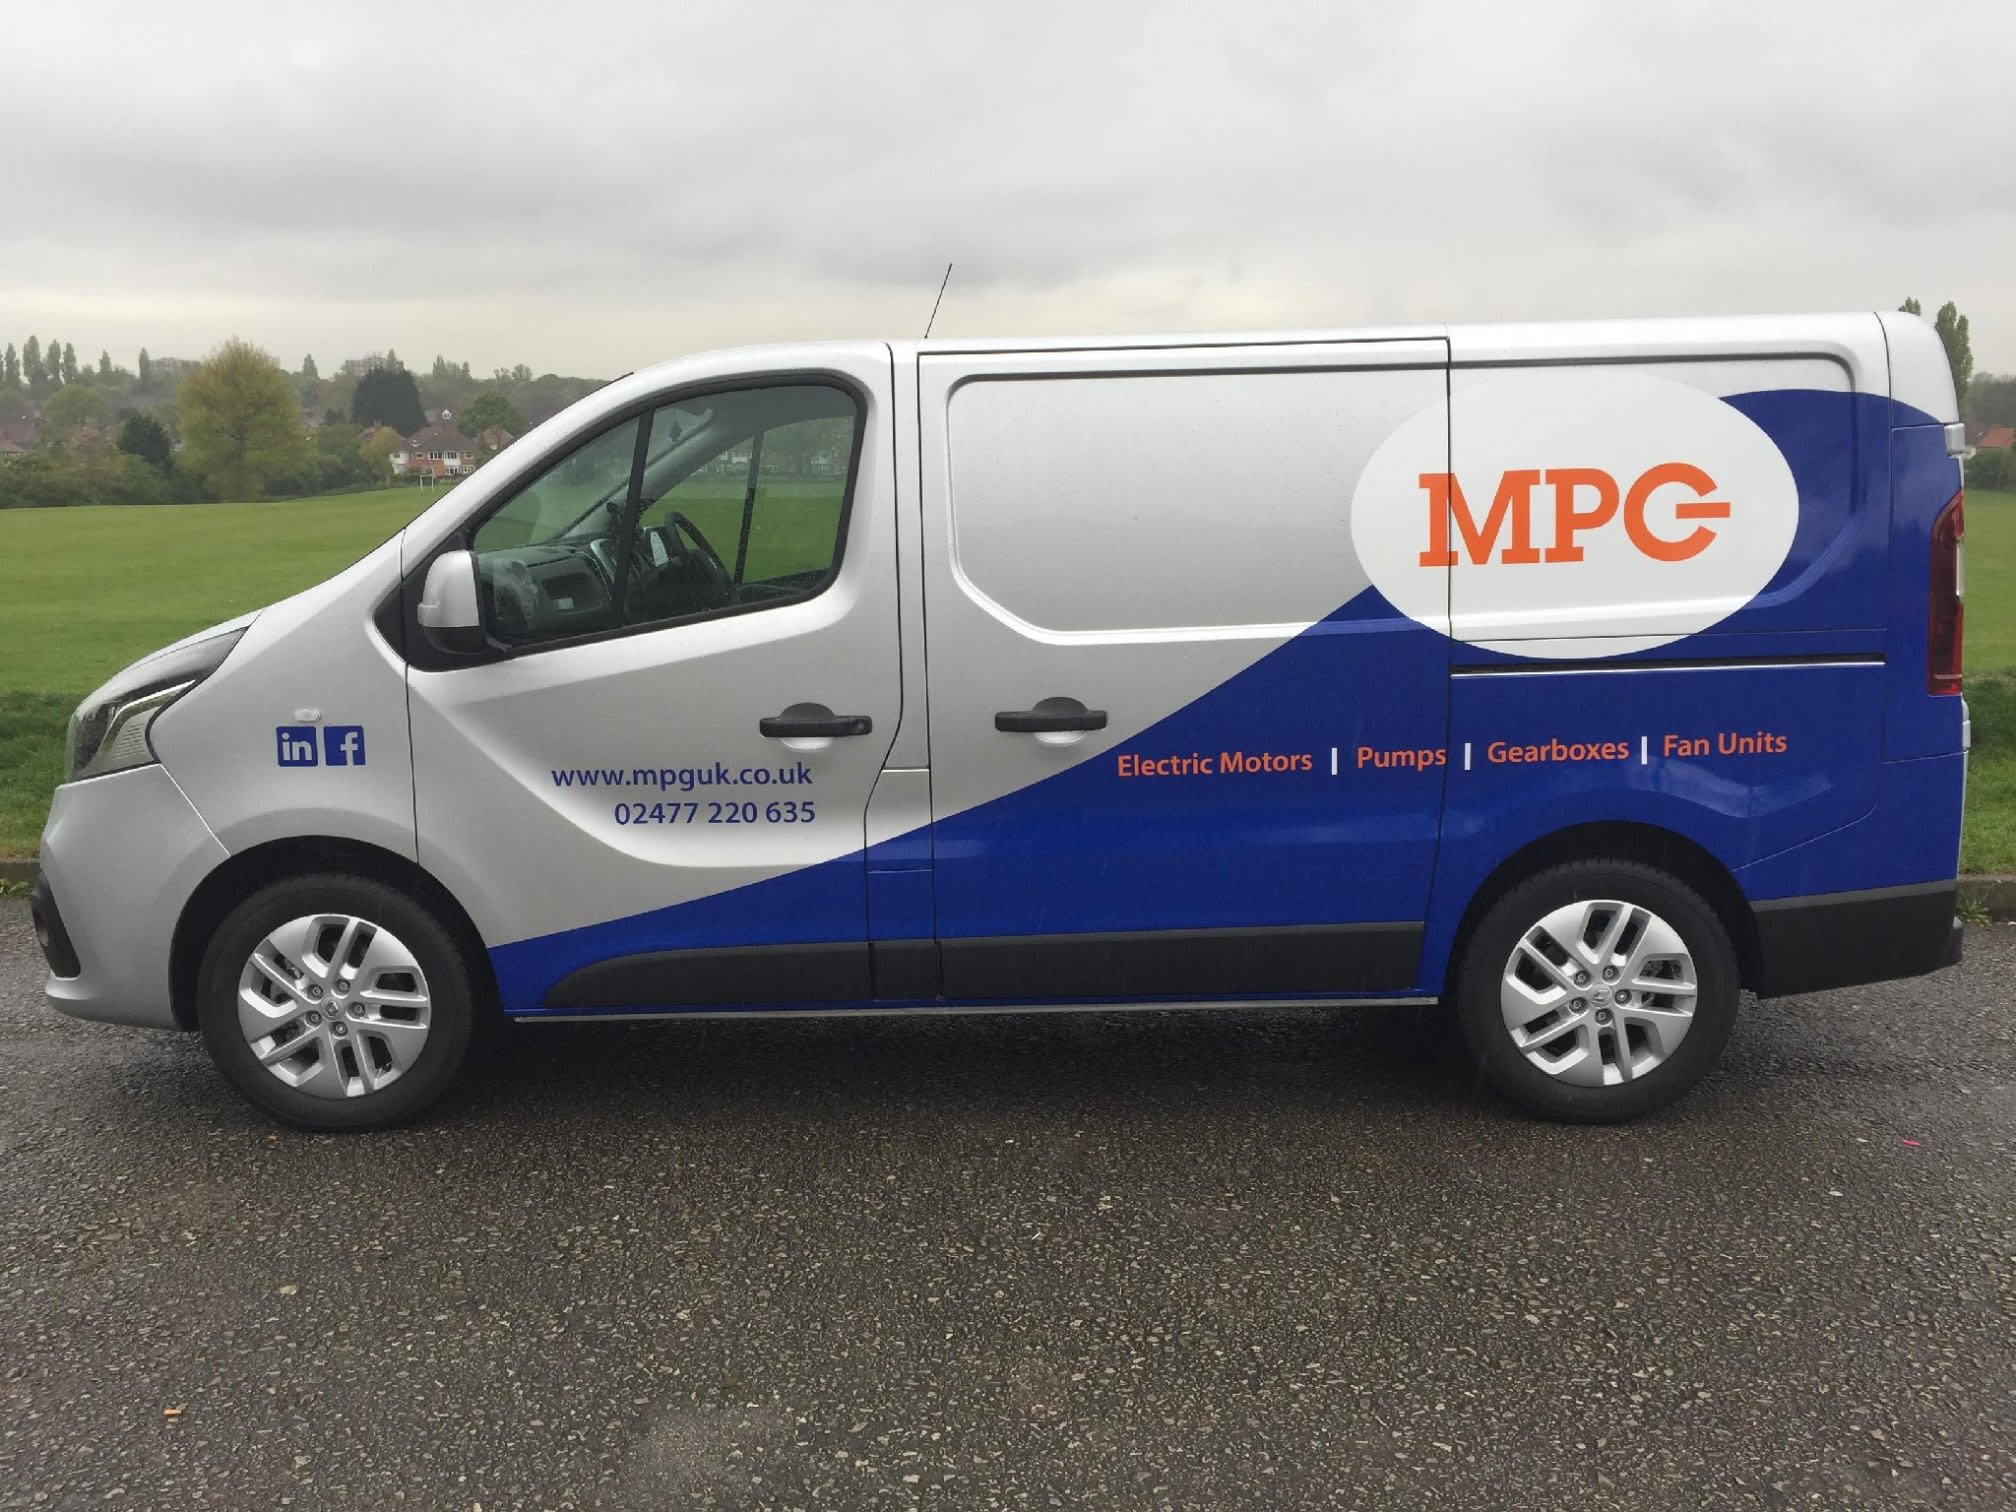 Images Motors, Pumps & Gearboxes UK Ltd